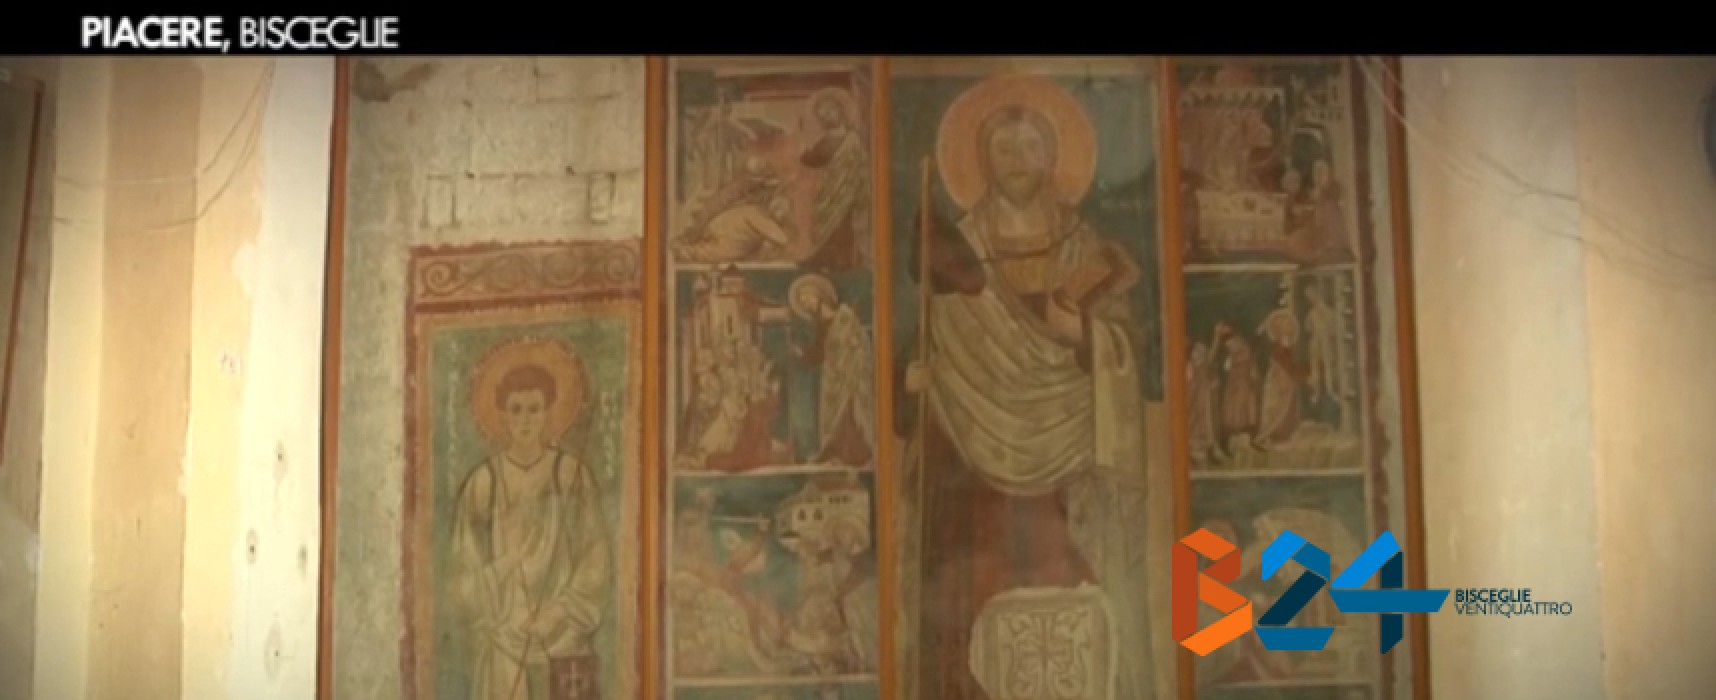 “La pittura medievale in Puglia e Basilicata”, seminario presso la chiesa di santa Margherita